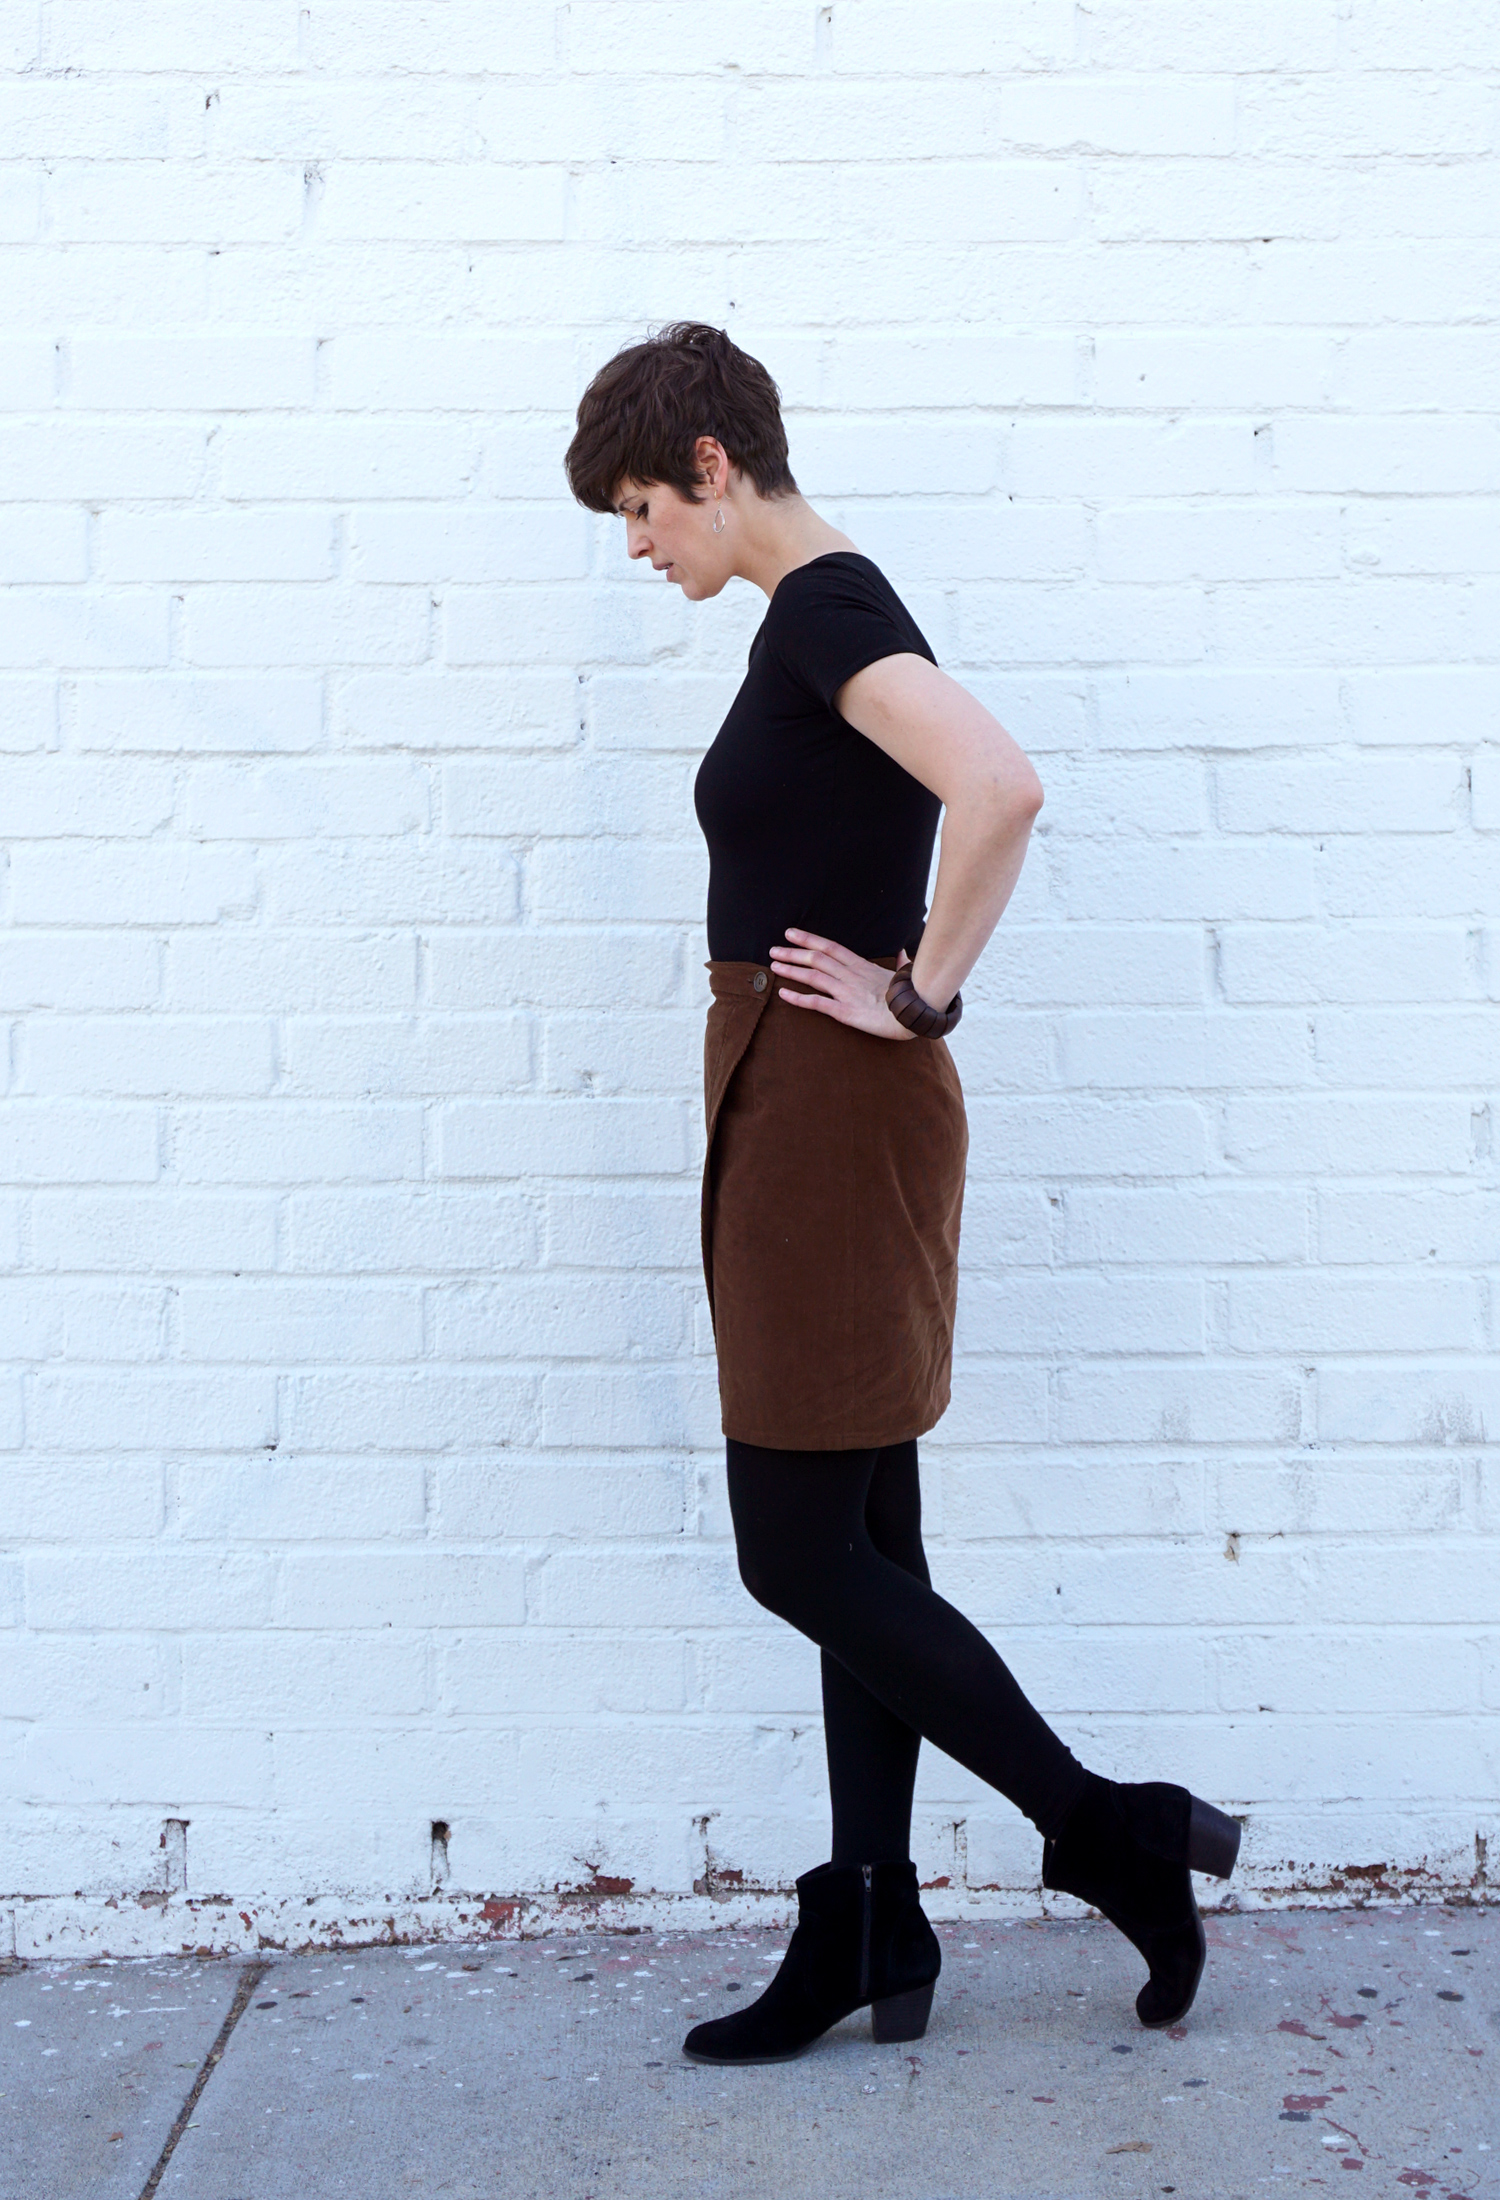 Nita Wrap Skirt PDF Pattern — Sew DIY